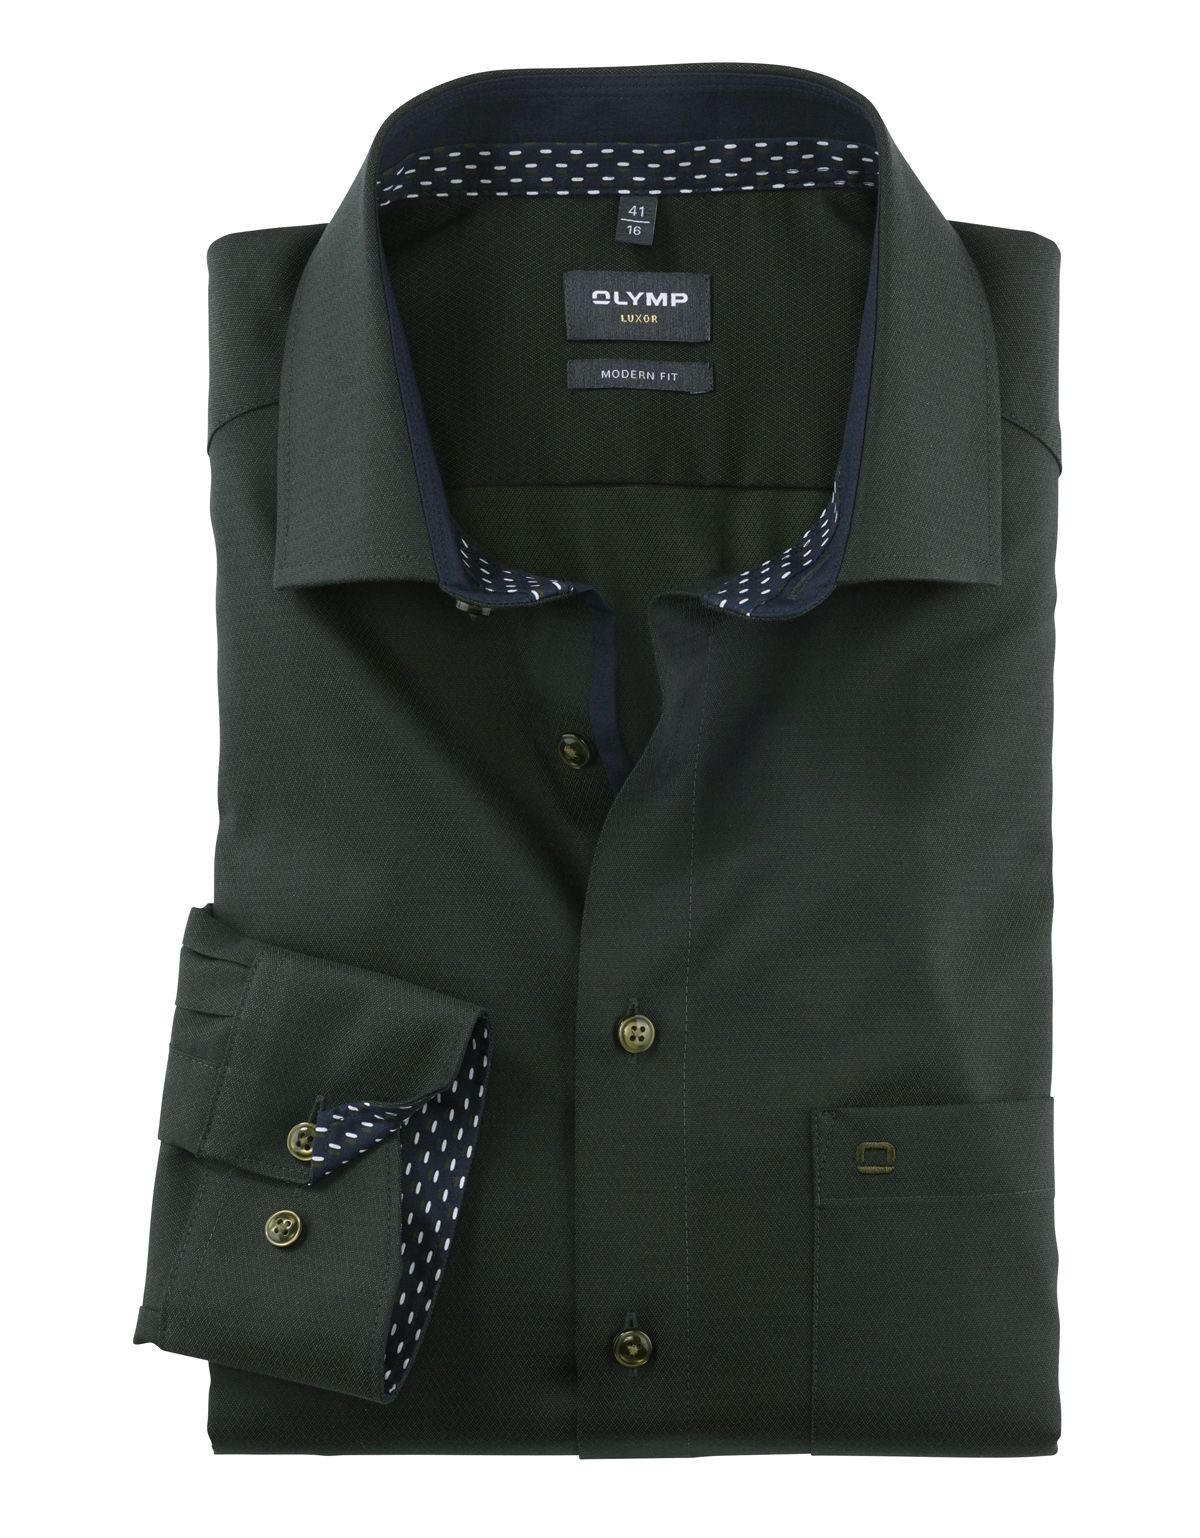 Рубашка мужская OLYMP Luxor, modern fit, фактурная ткань, рост выше 186